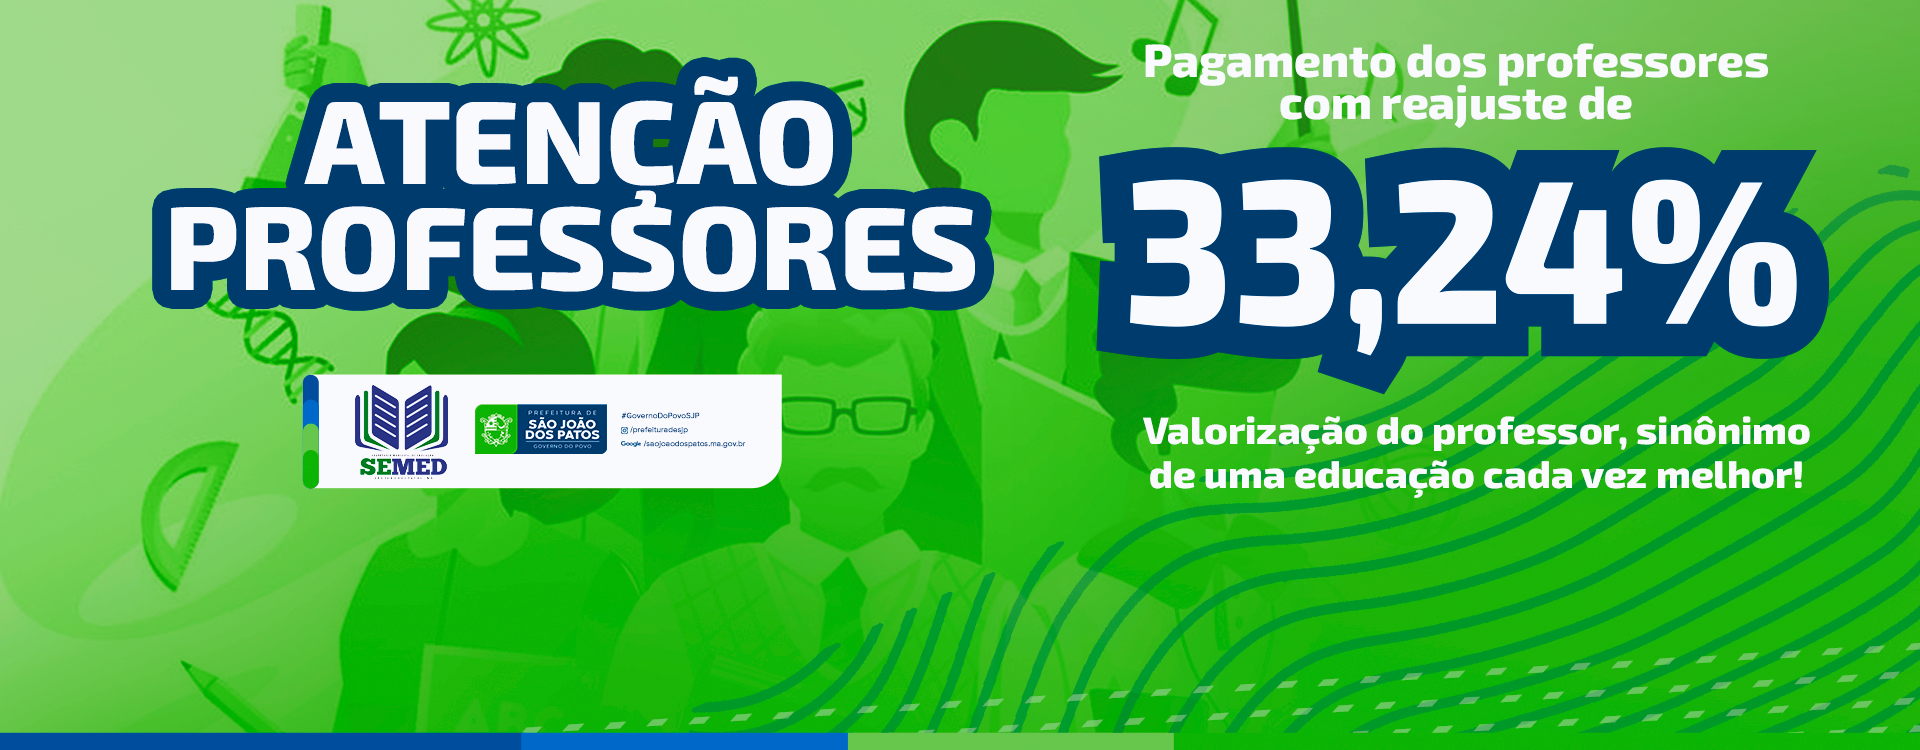 Prefeitura de São João dos Patos, garante pagamento dos professores com o reajuste de 33,24%